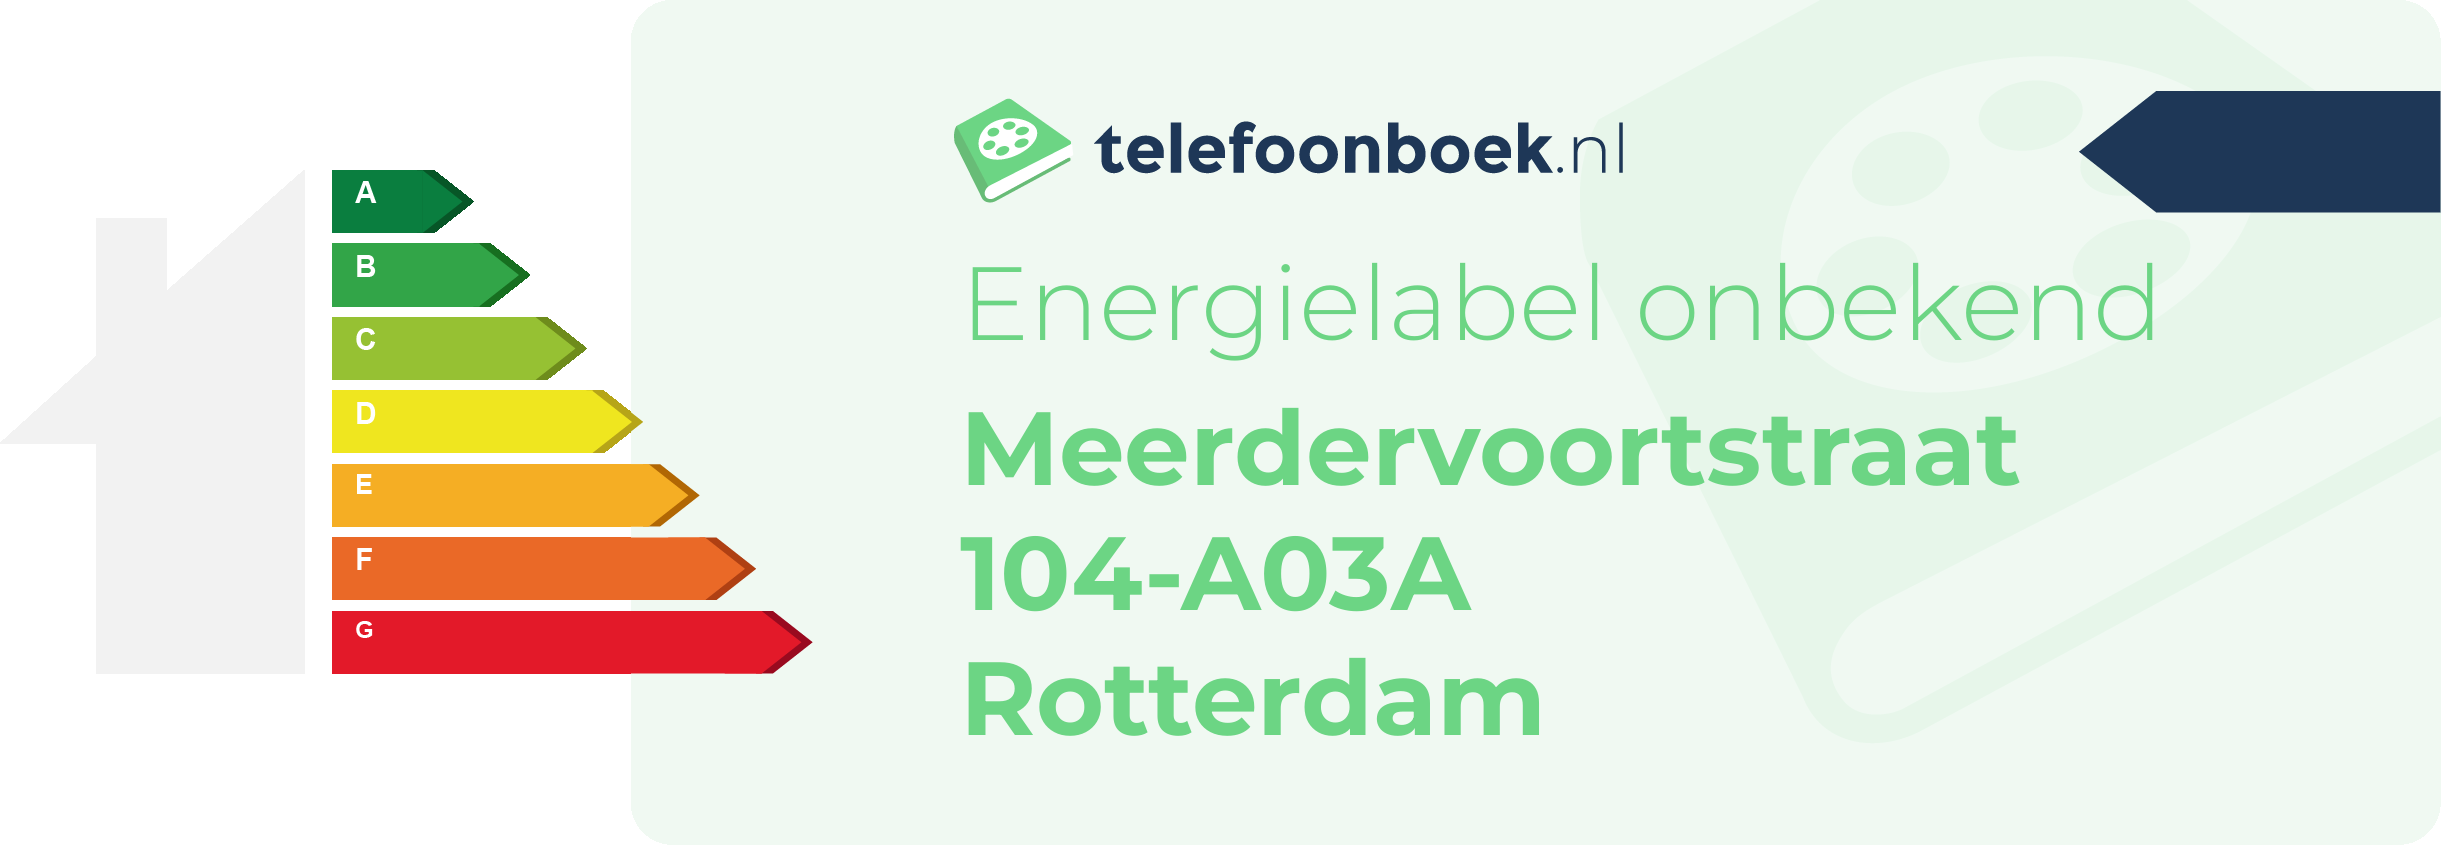 Energielabel Meerdervoortstraat 104-A03A Rotterdam